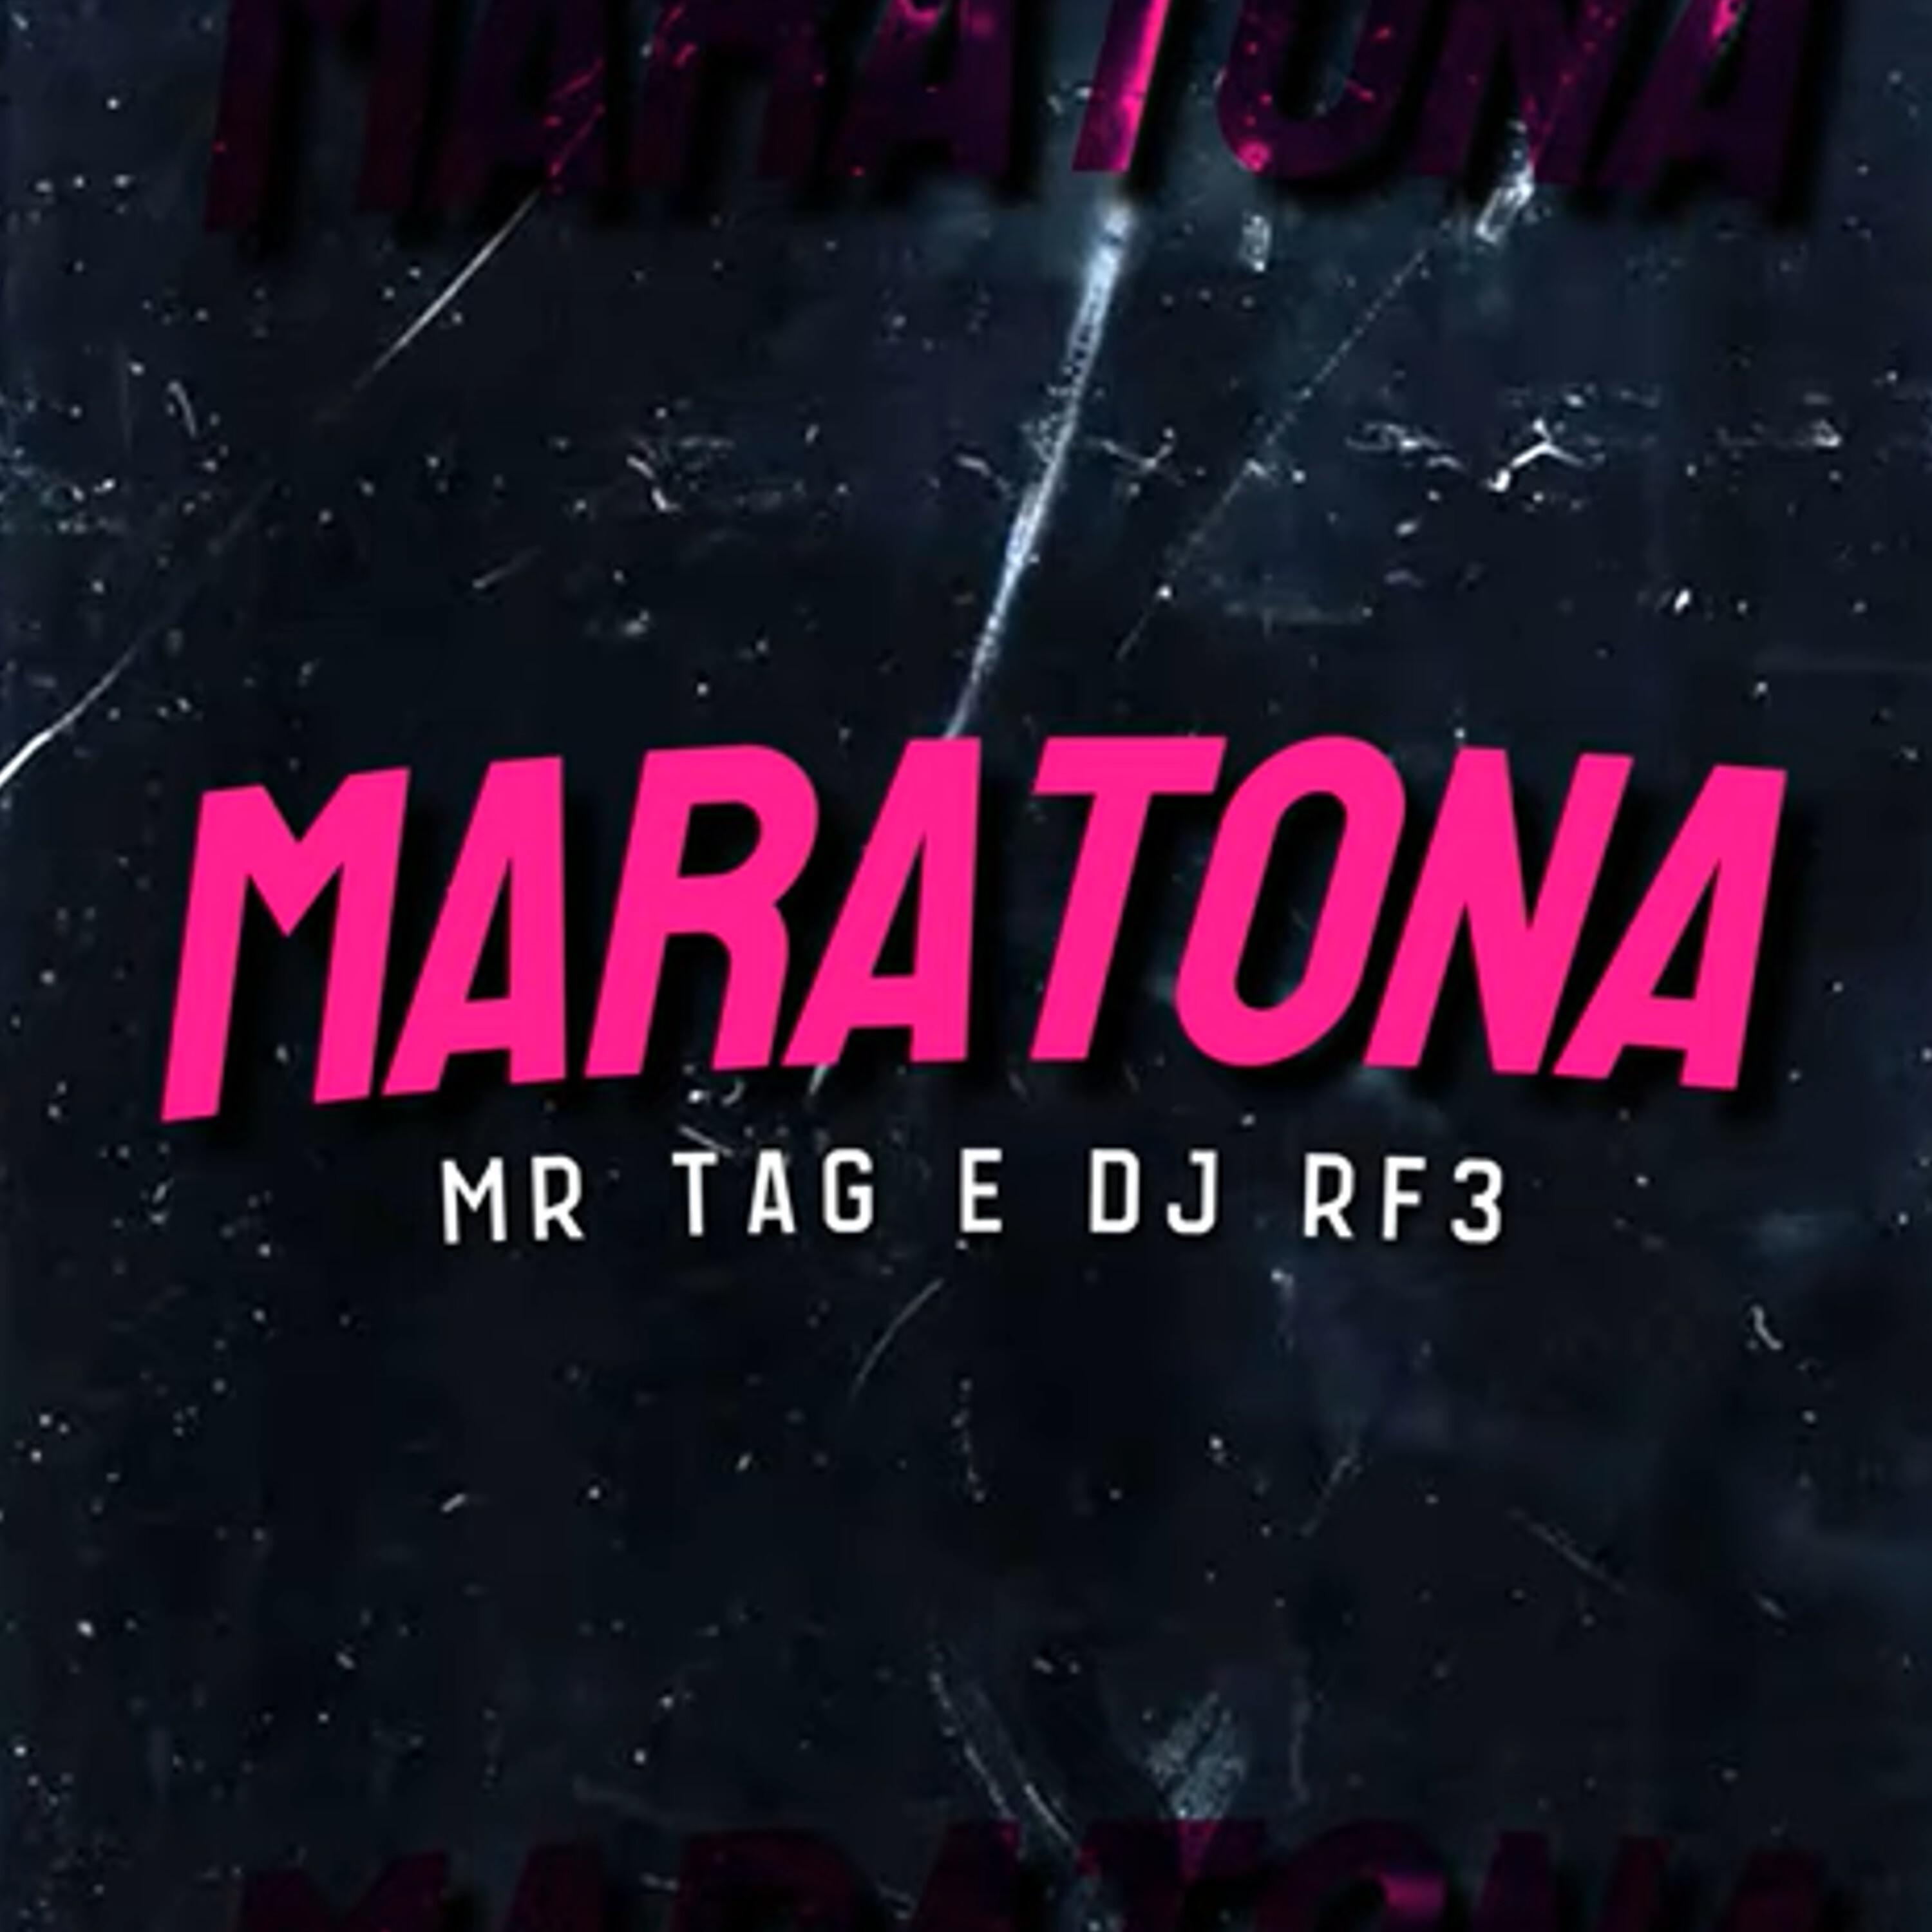 Mr Tag - Maratona